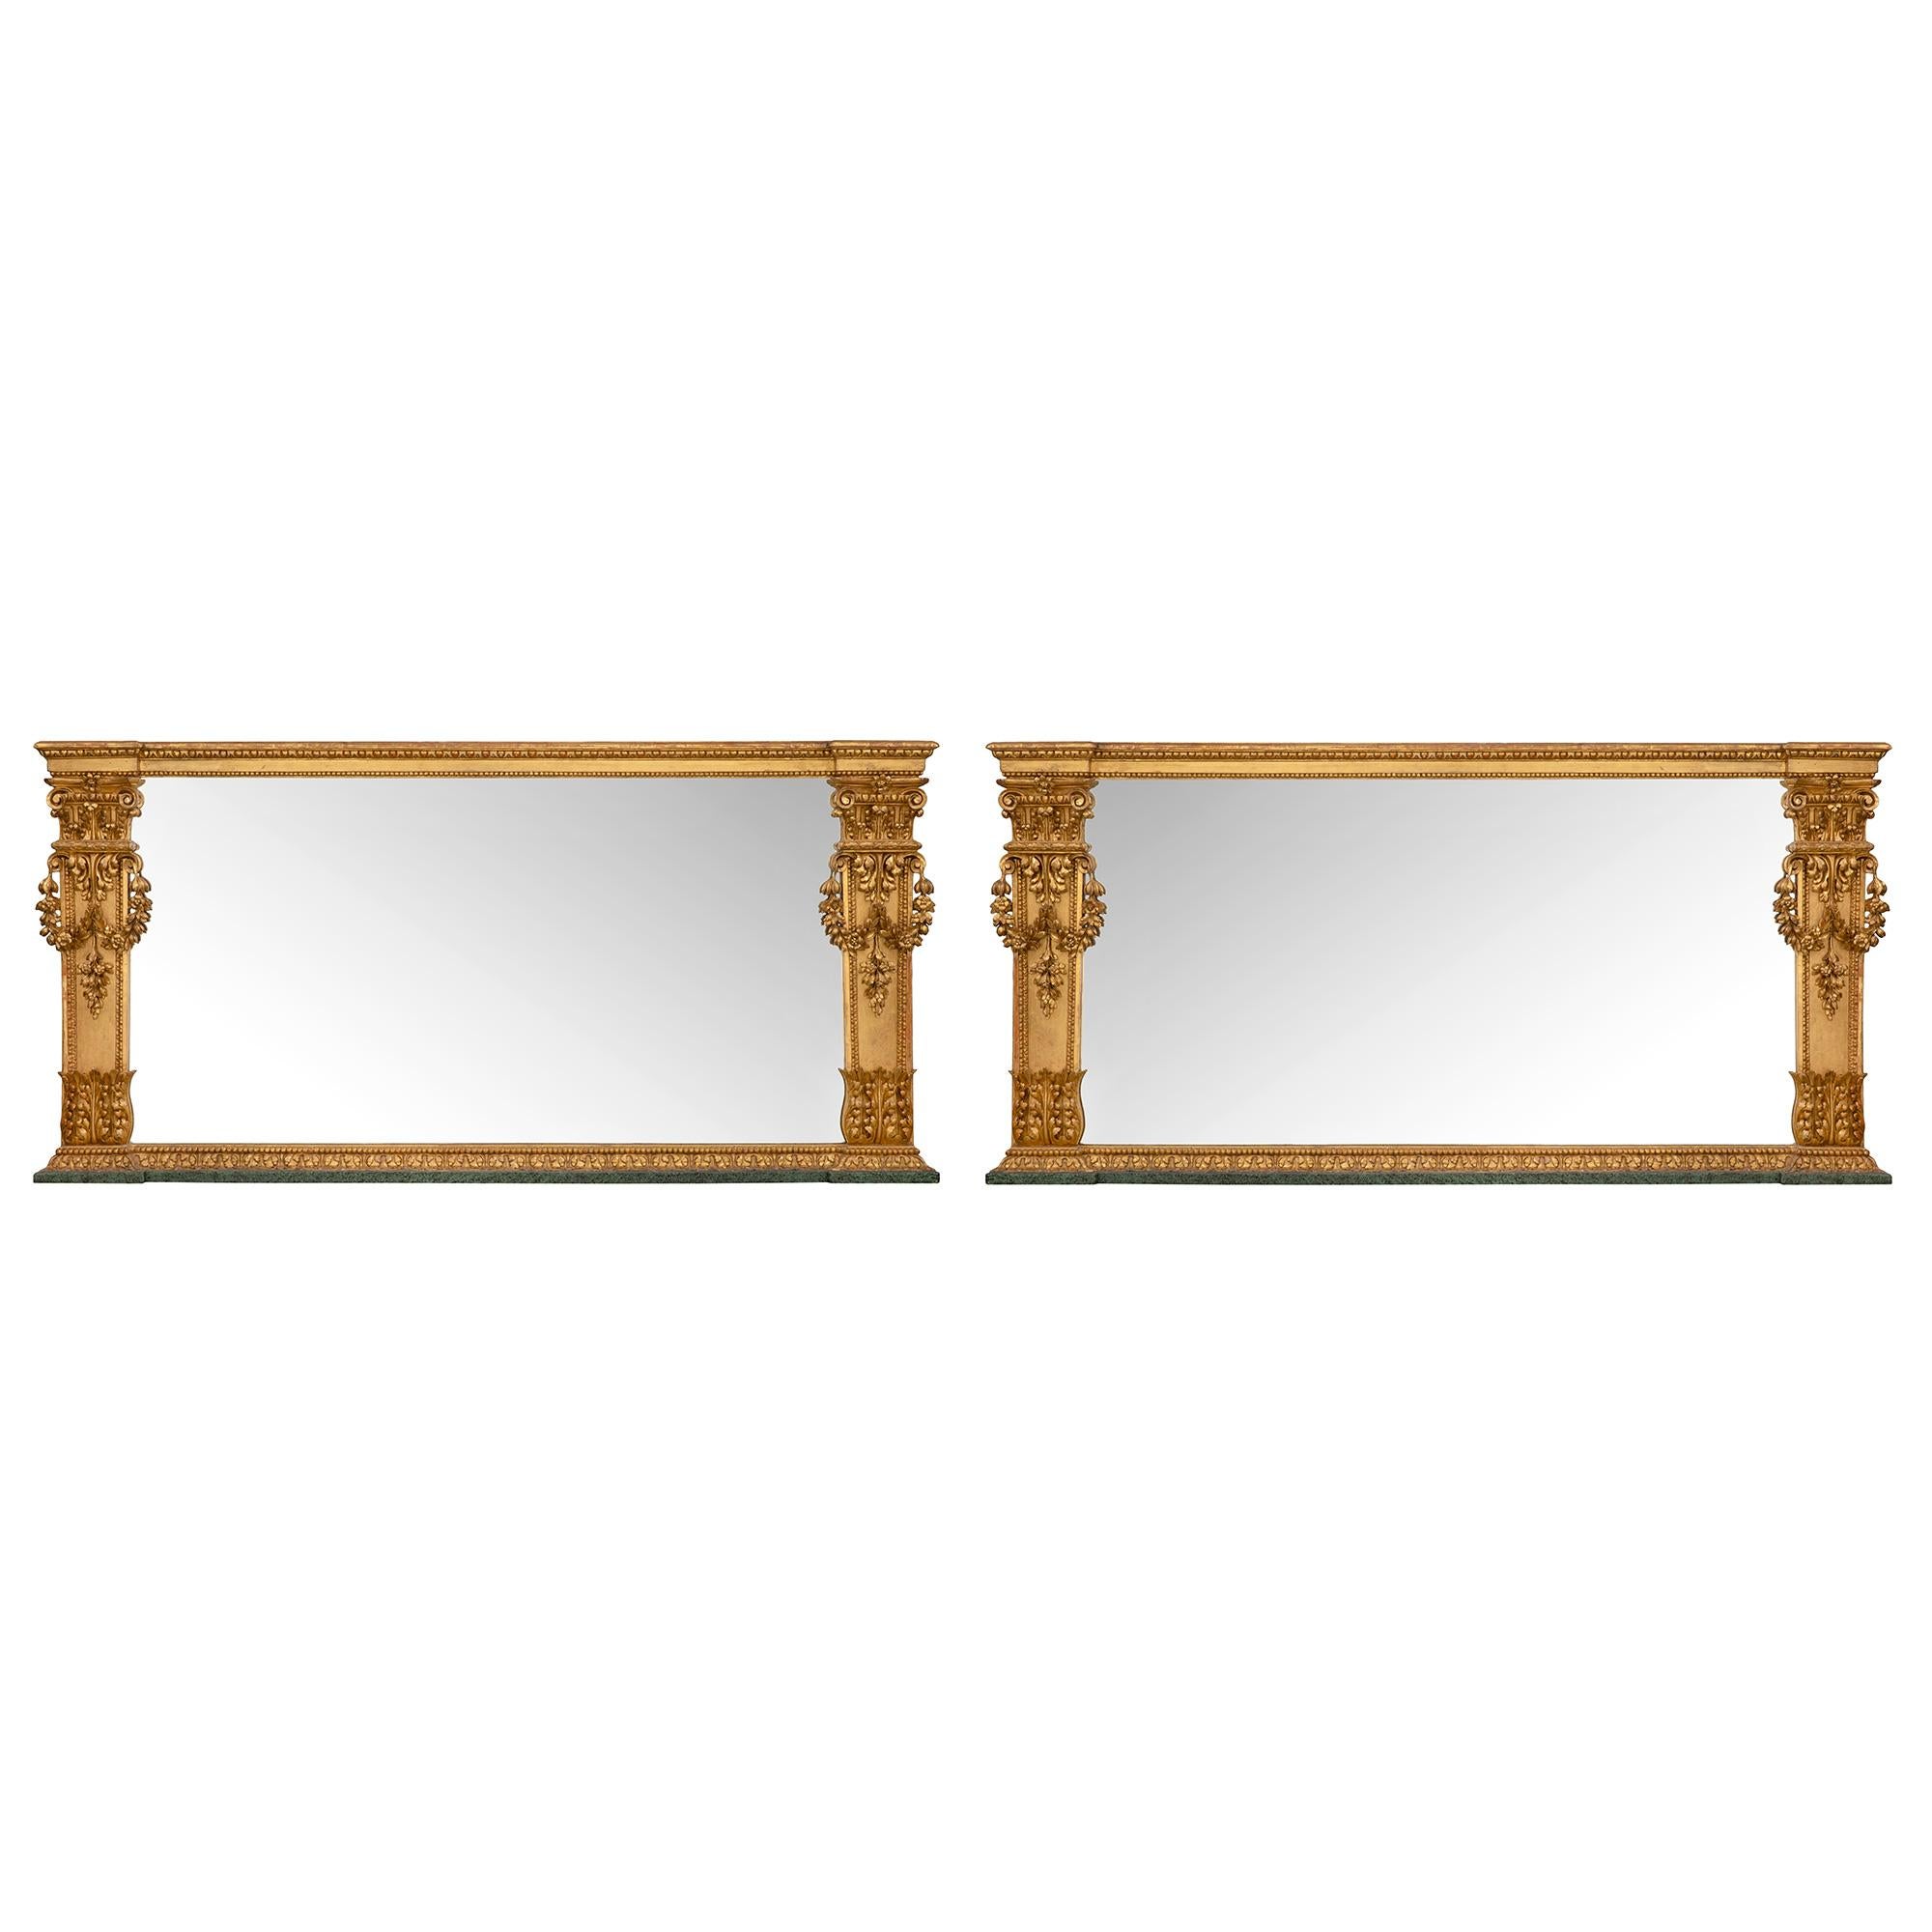 Une paire spectaculaire et de grande taille de miroirs italiens en bois patiné et doré du début du XIXe siècle. L'exceptionnelle paire de miroirs repose sur des socles en faux marbre vert peint, sous un bandeau en bois doré orné de feuilles de